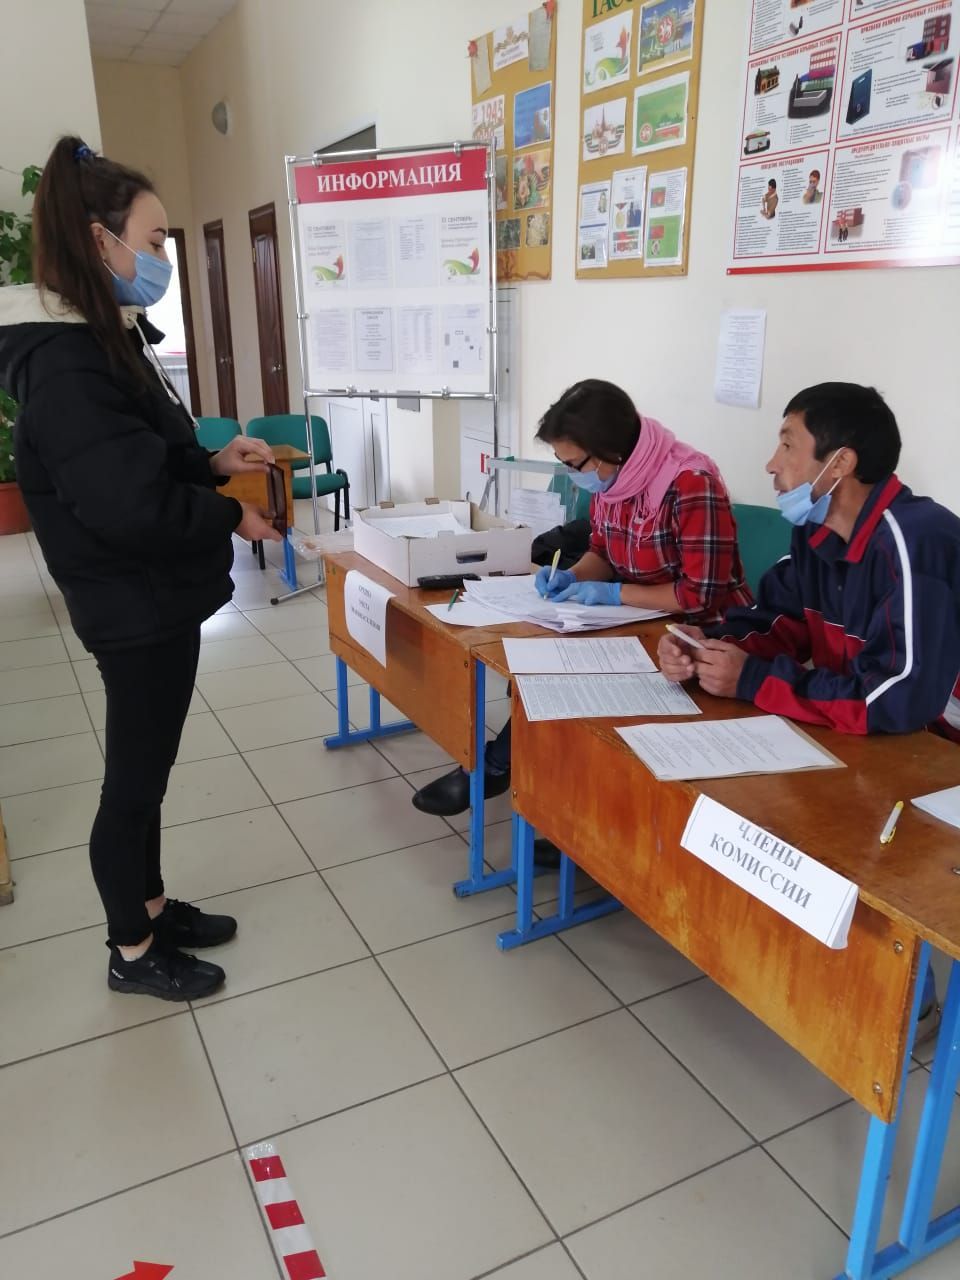 Аделя Шайхутдинова из села Акбаш впервые приняла участие в выборах